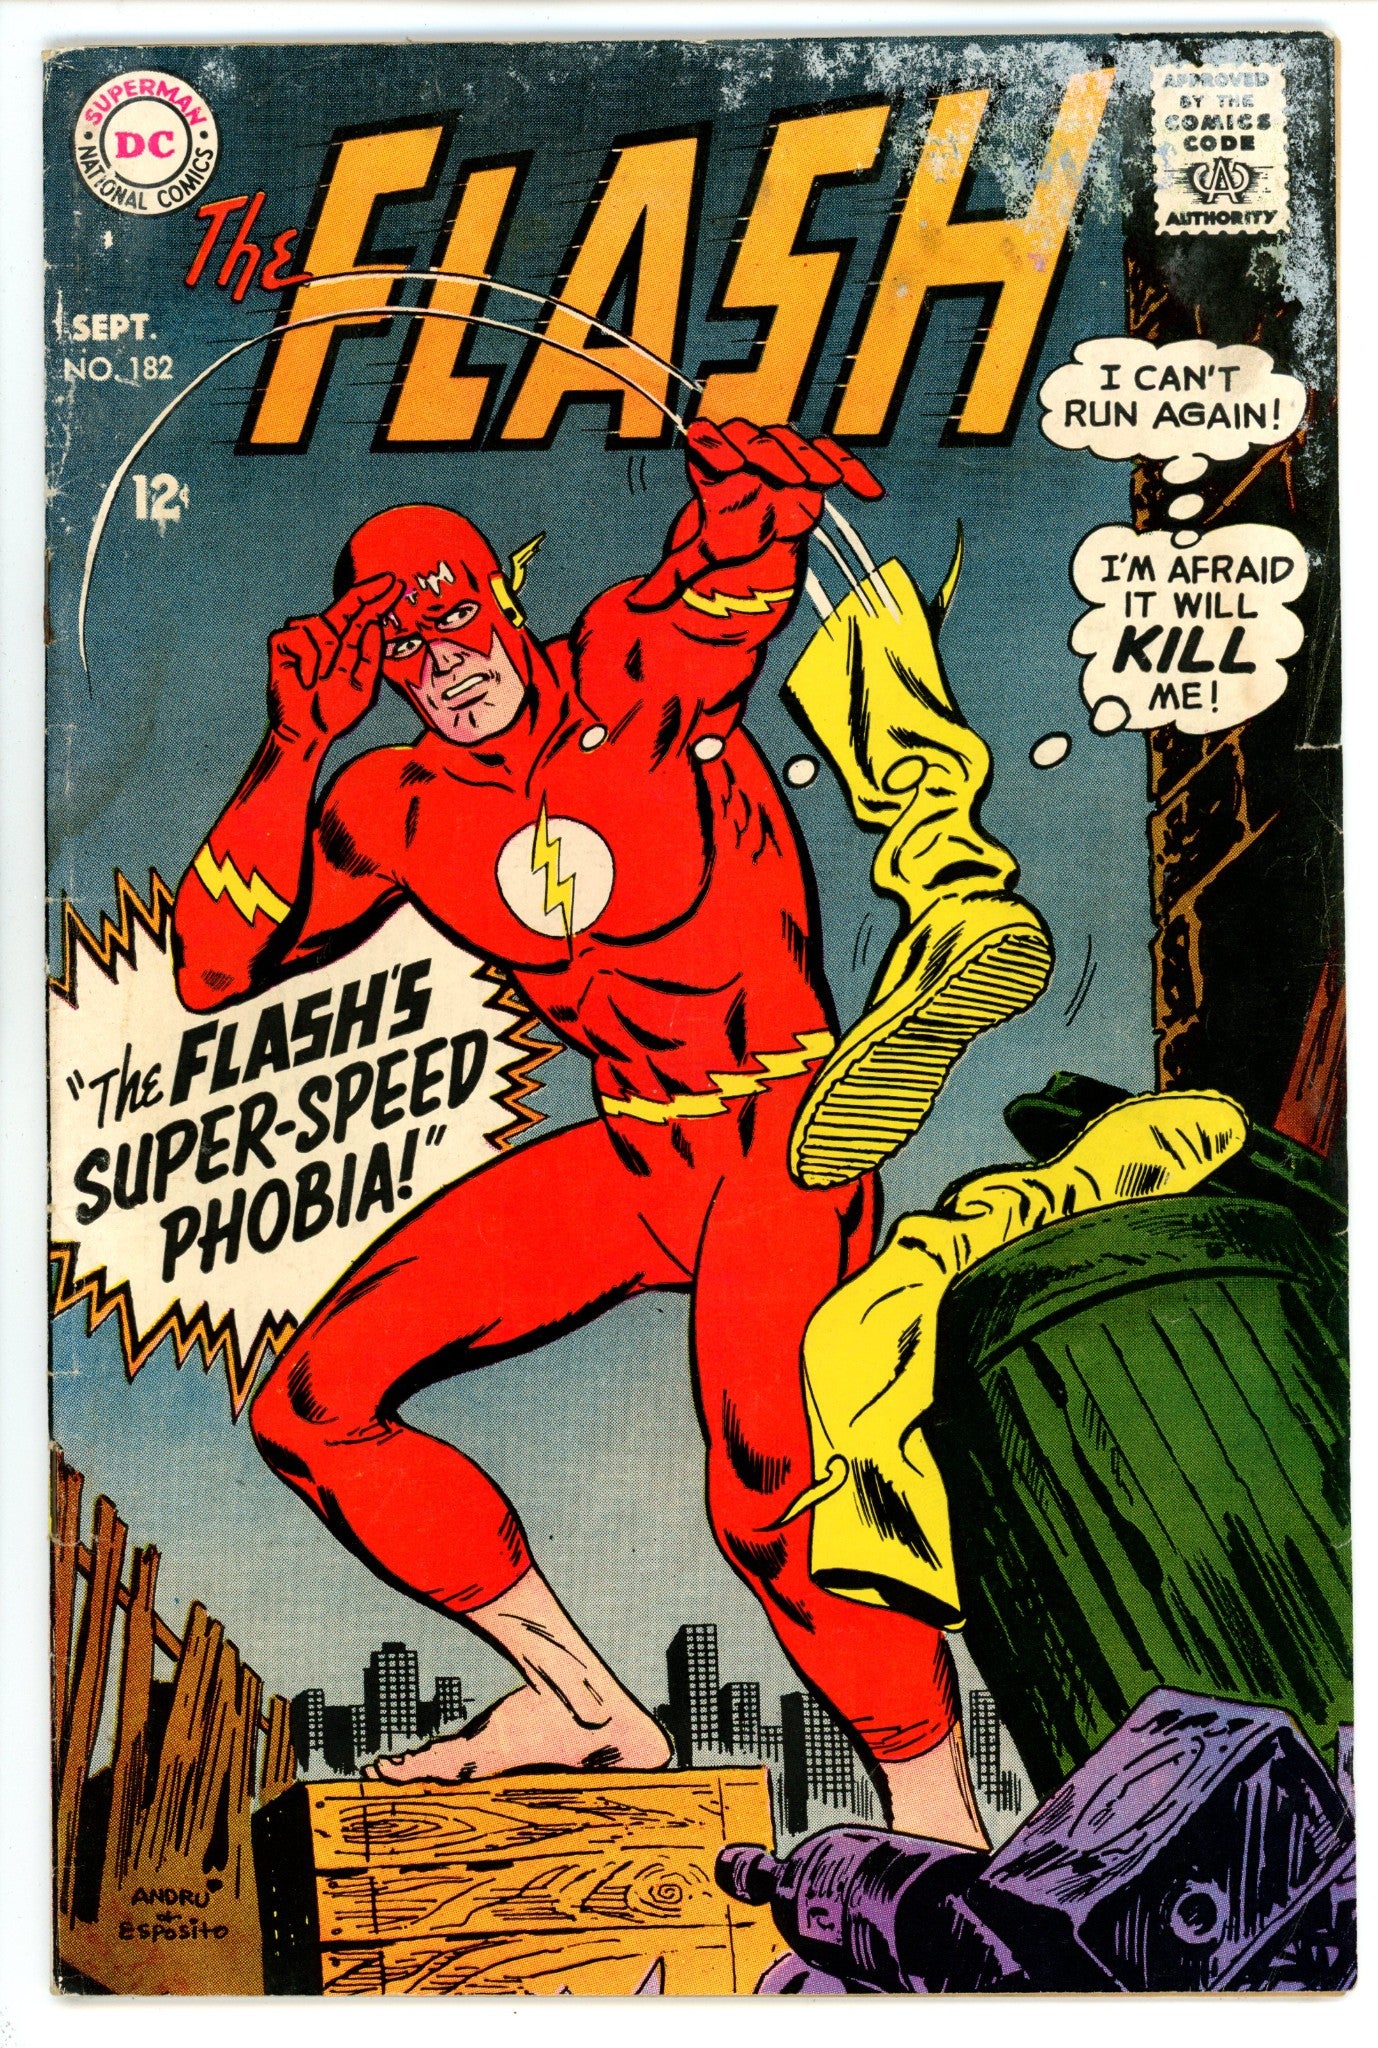 The Flash Vol 1 182 GD/VG (3.0) (1968) 